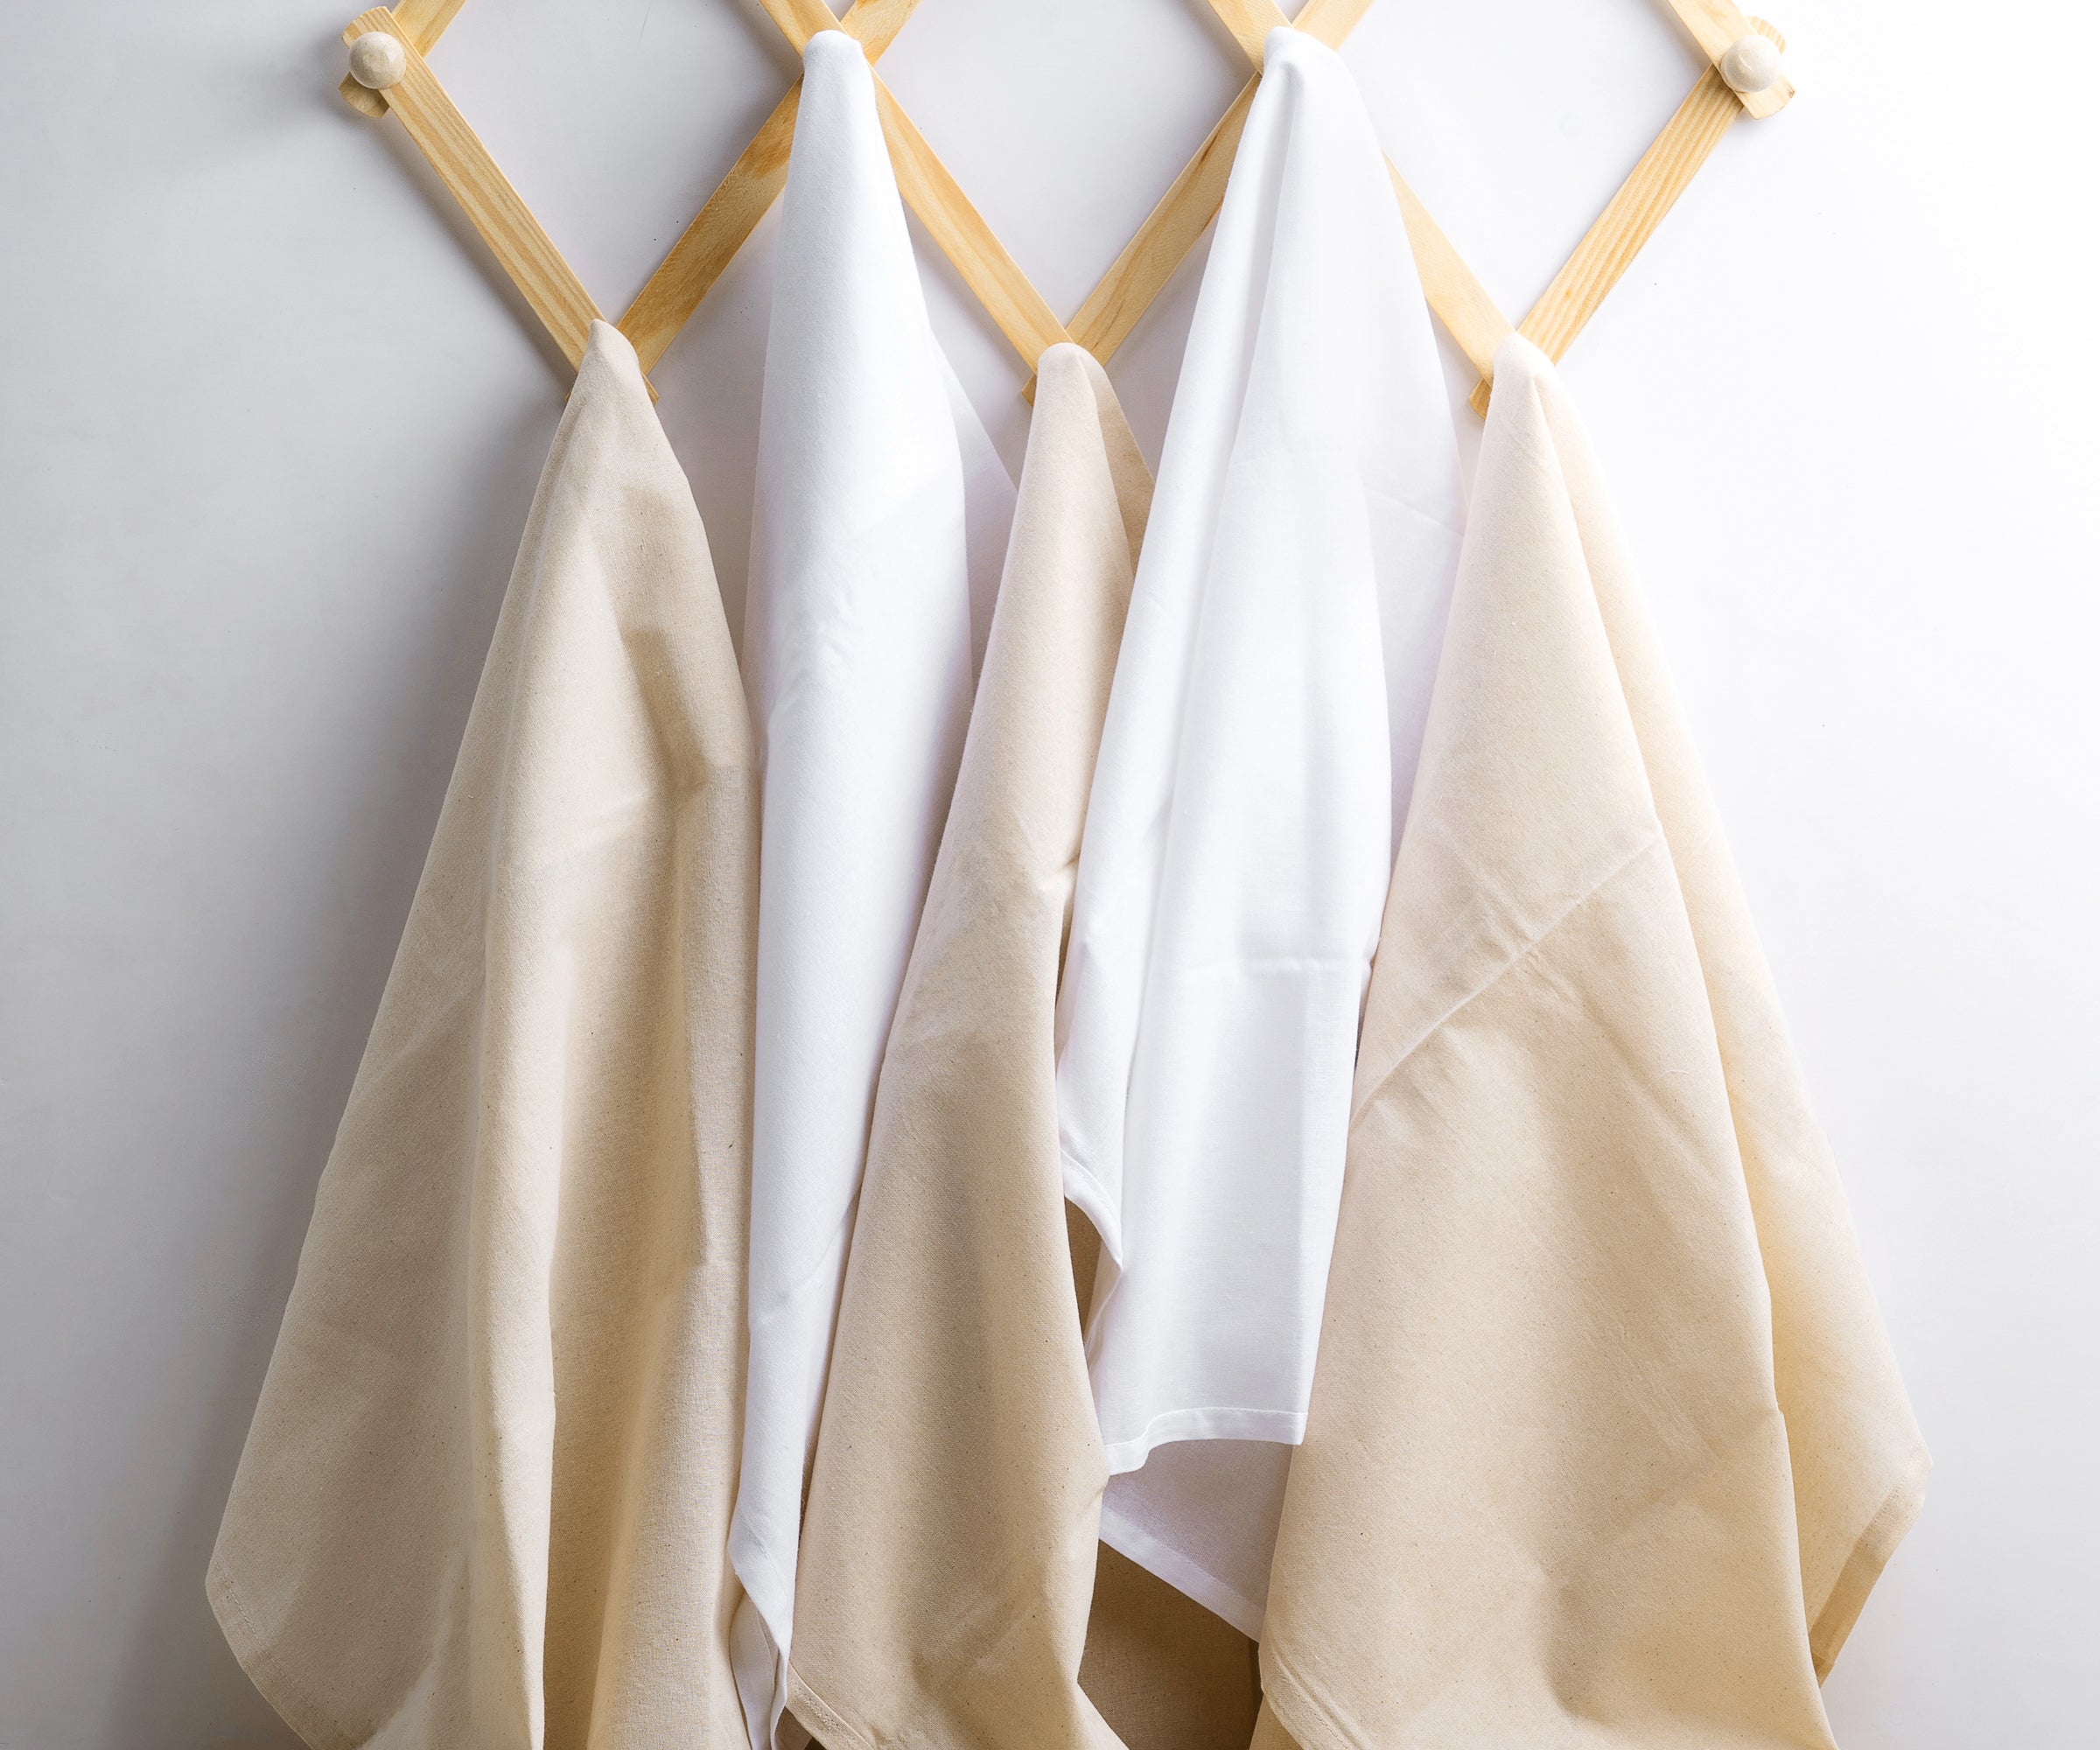 Romantic Linen Kitchen Towels with Cotton Lace Elements of Elegant